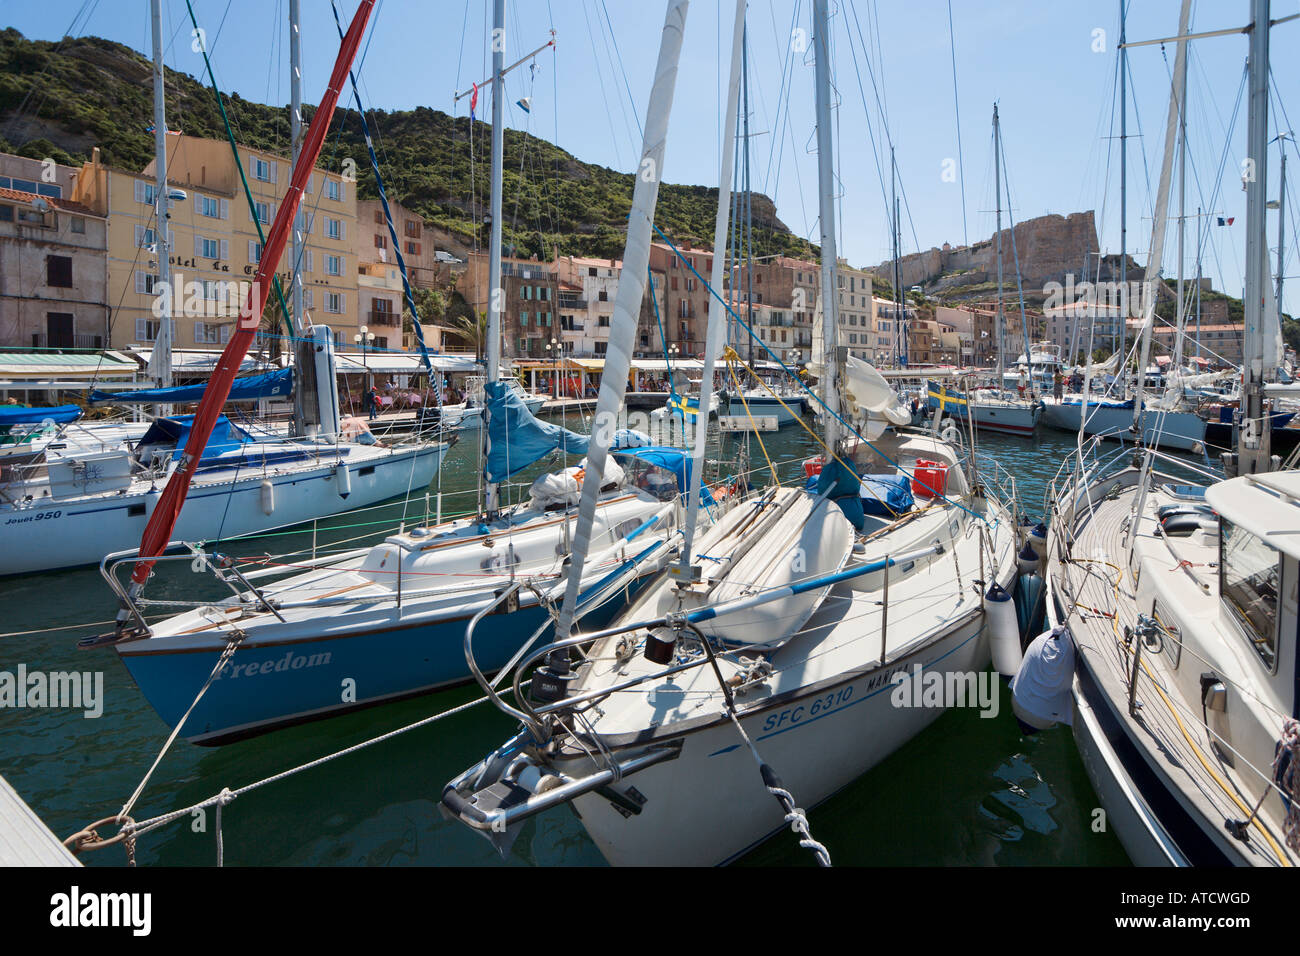 Bateaux dans le port de Bonifacio avec la haute-ville (vieille ville) et de la citadelle derrière, Corse, France Banque D'Images